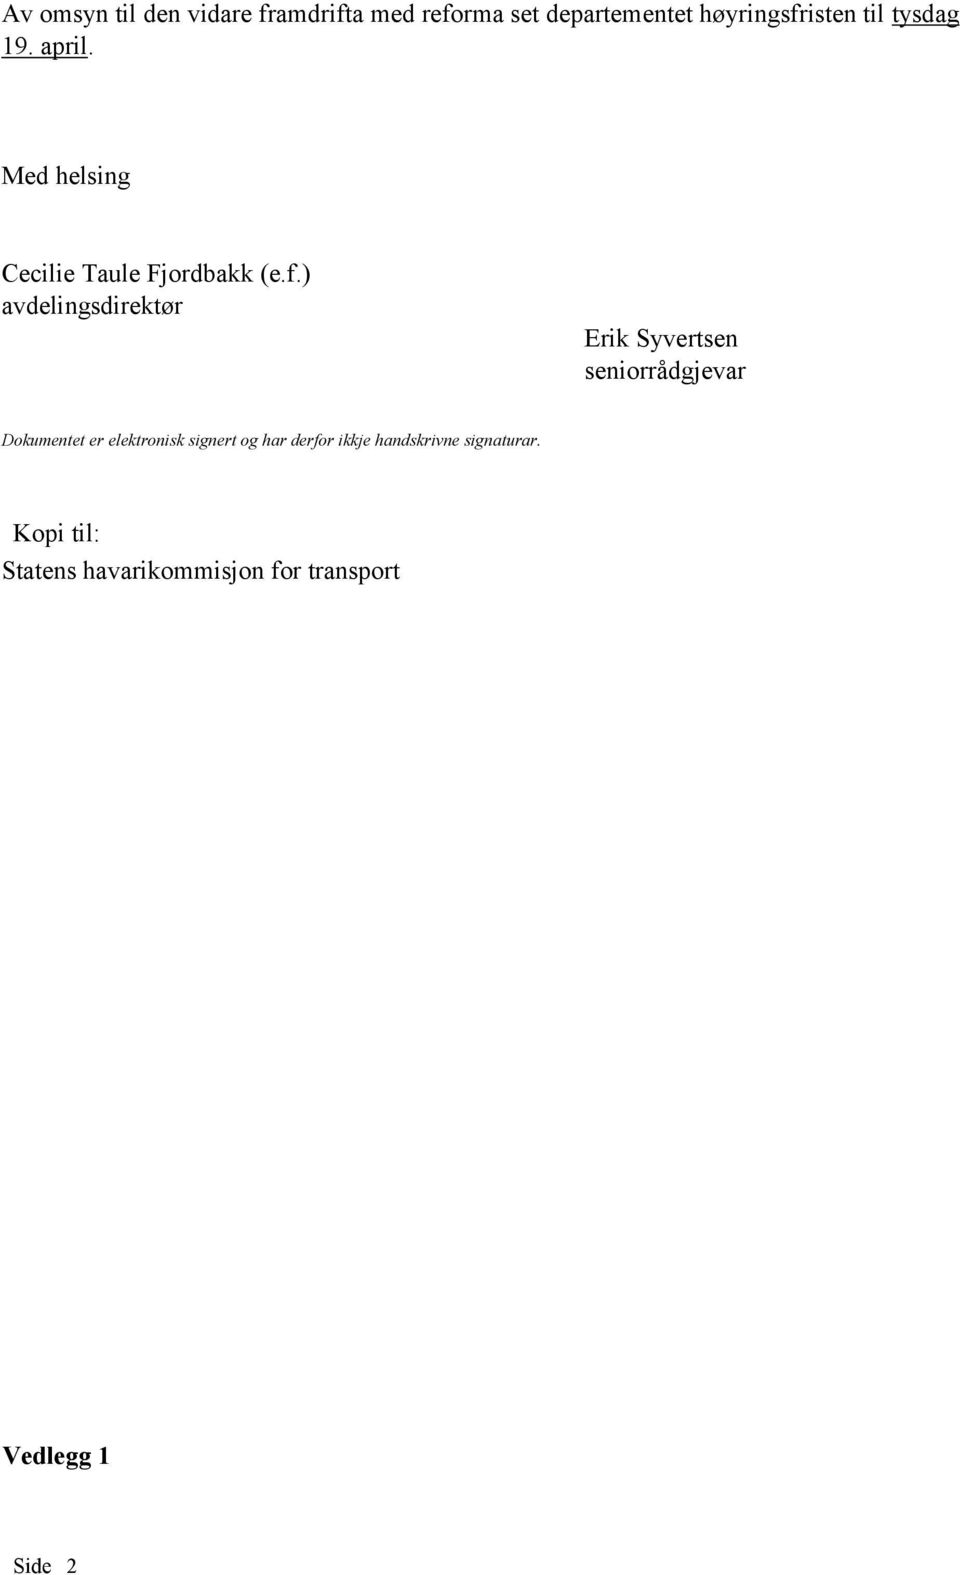 ) avdelingsdirektør Erik Syvertsen seniorrådgjevar Dokumentet er elektronisk signert